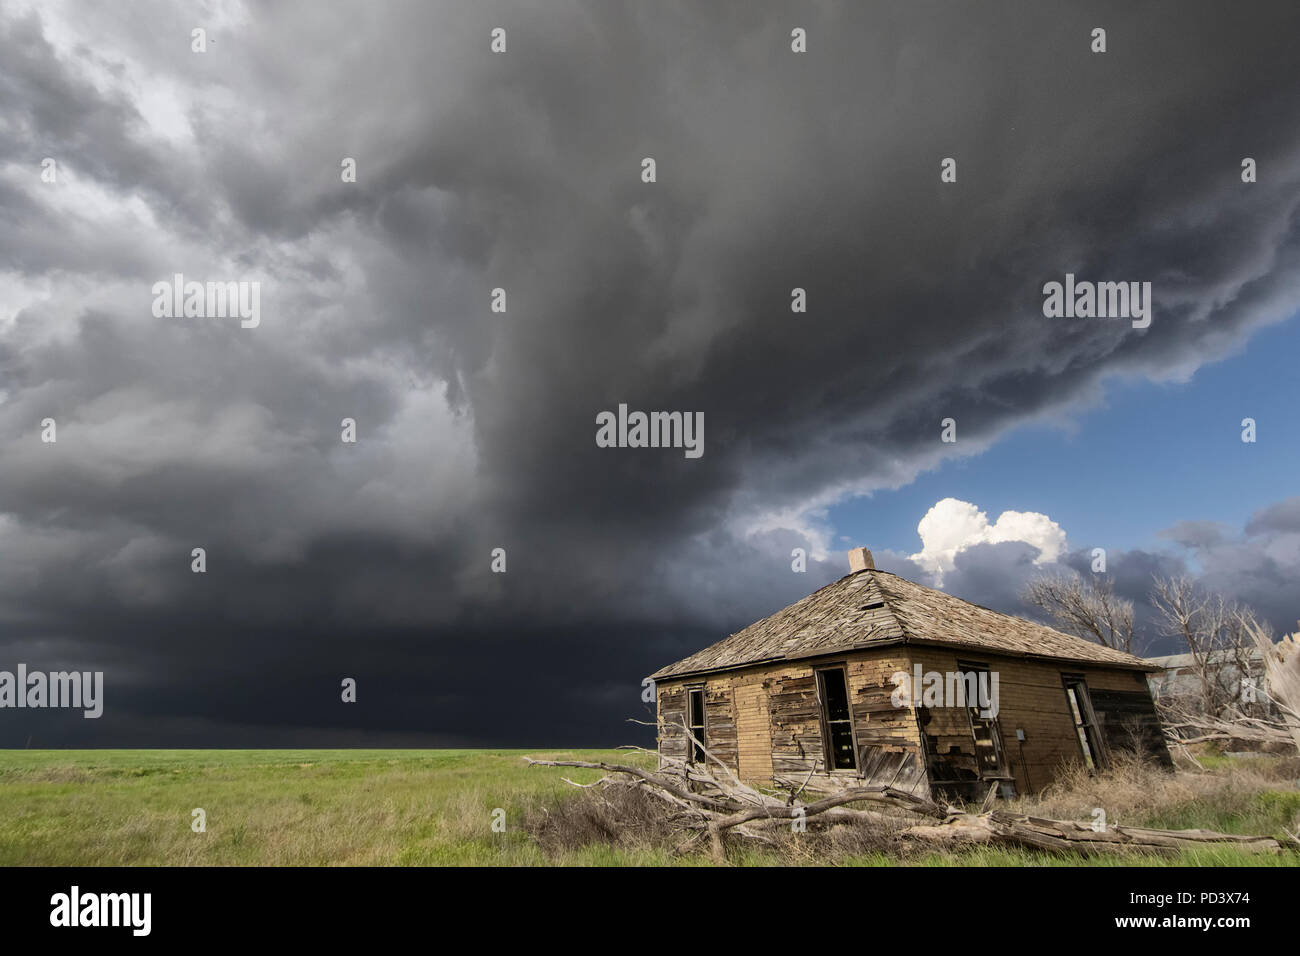 Ensoleillement intense et violent orage, grange en premier plan, Cope, Colorado, États-Unis Banque D'Images